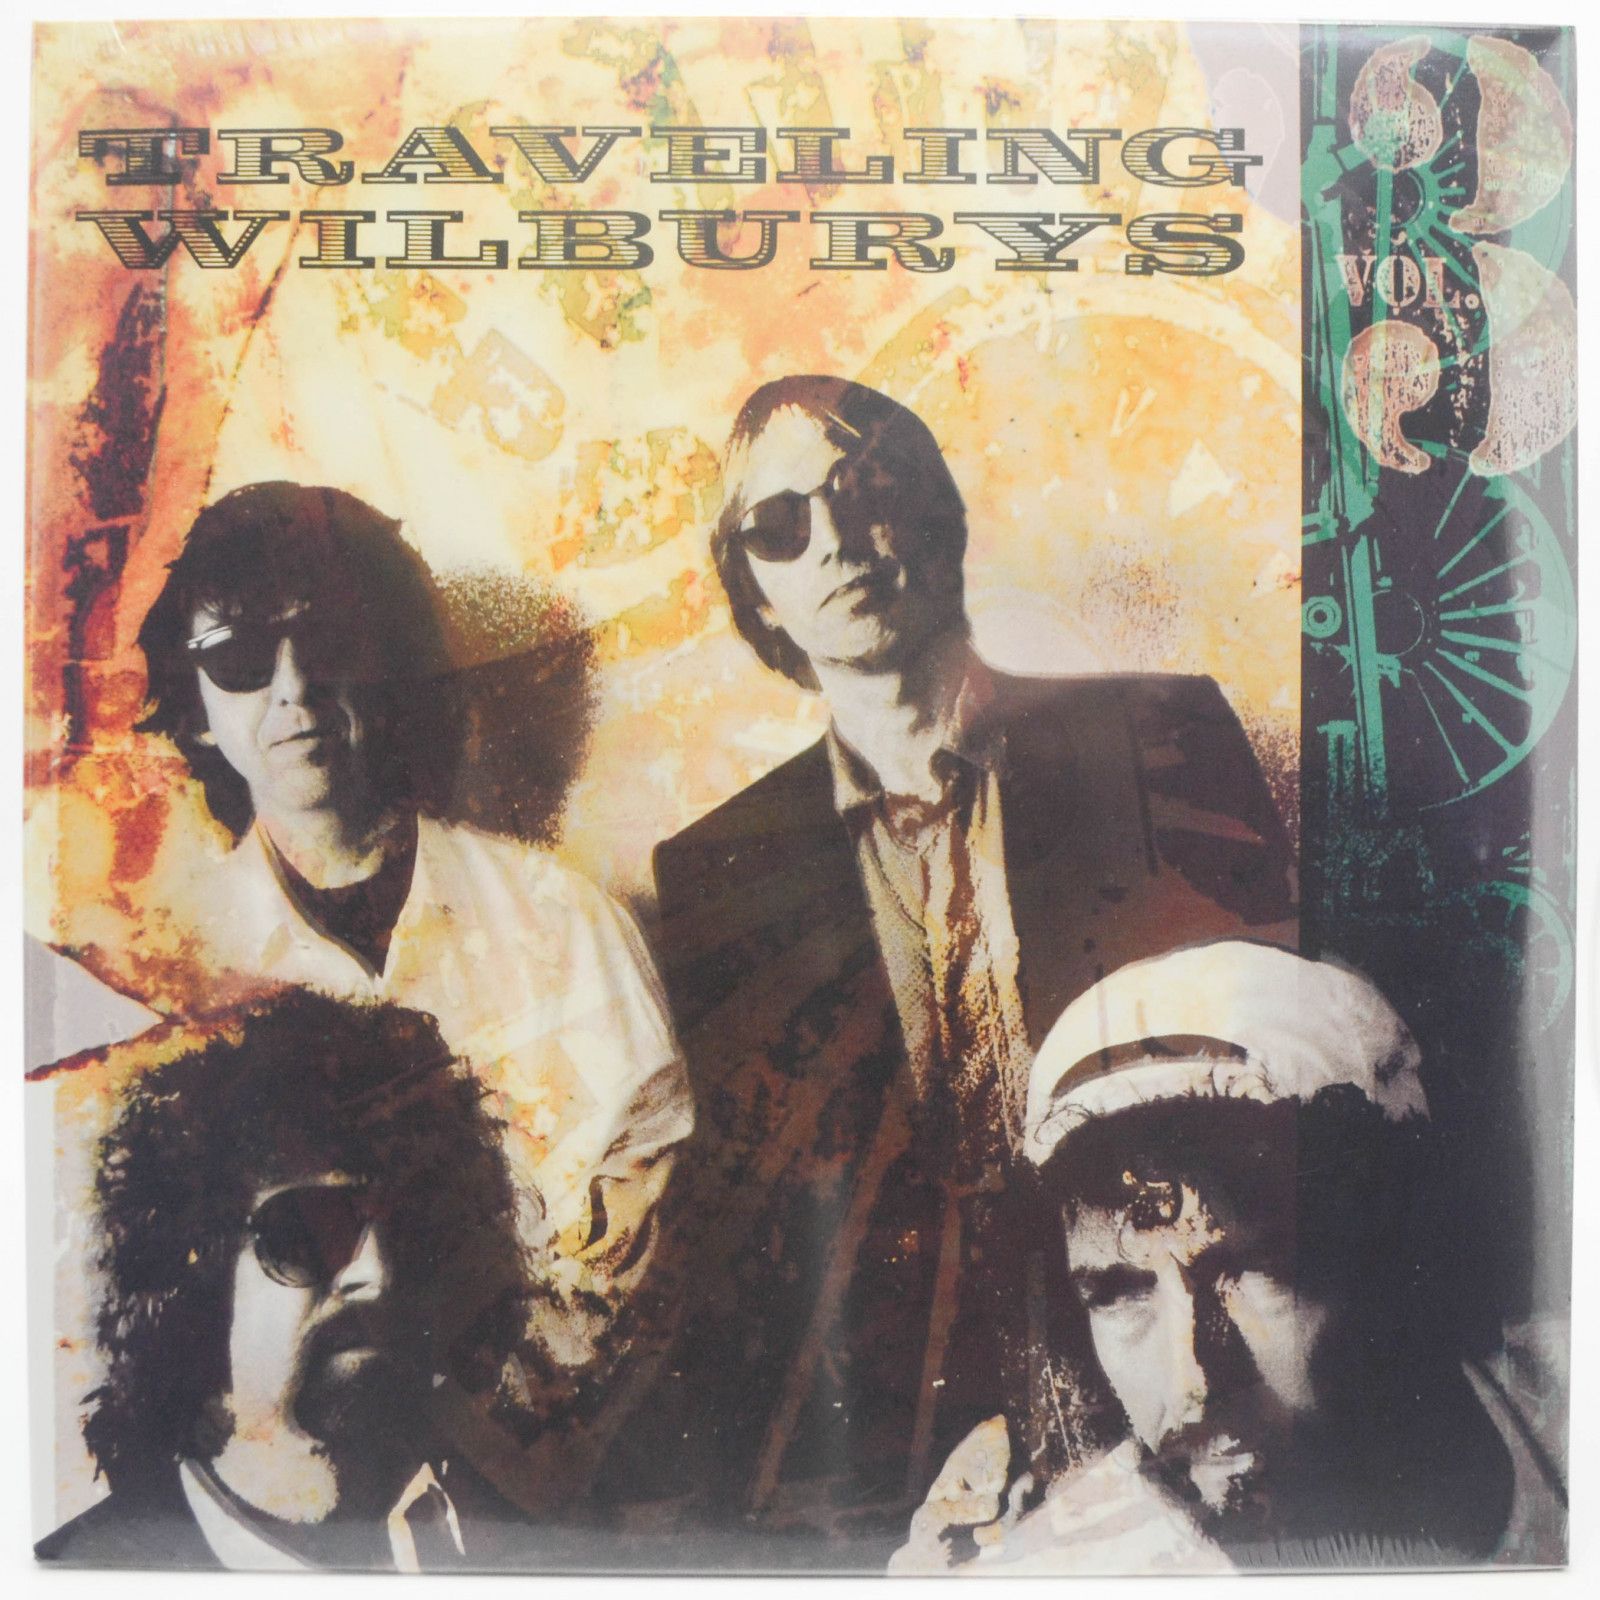 Traveling Wilburys — Vol 3, 1990